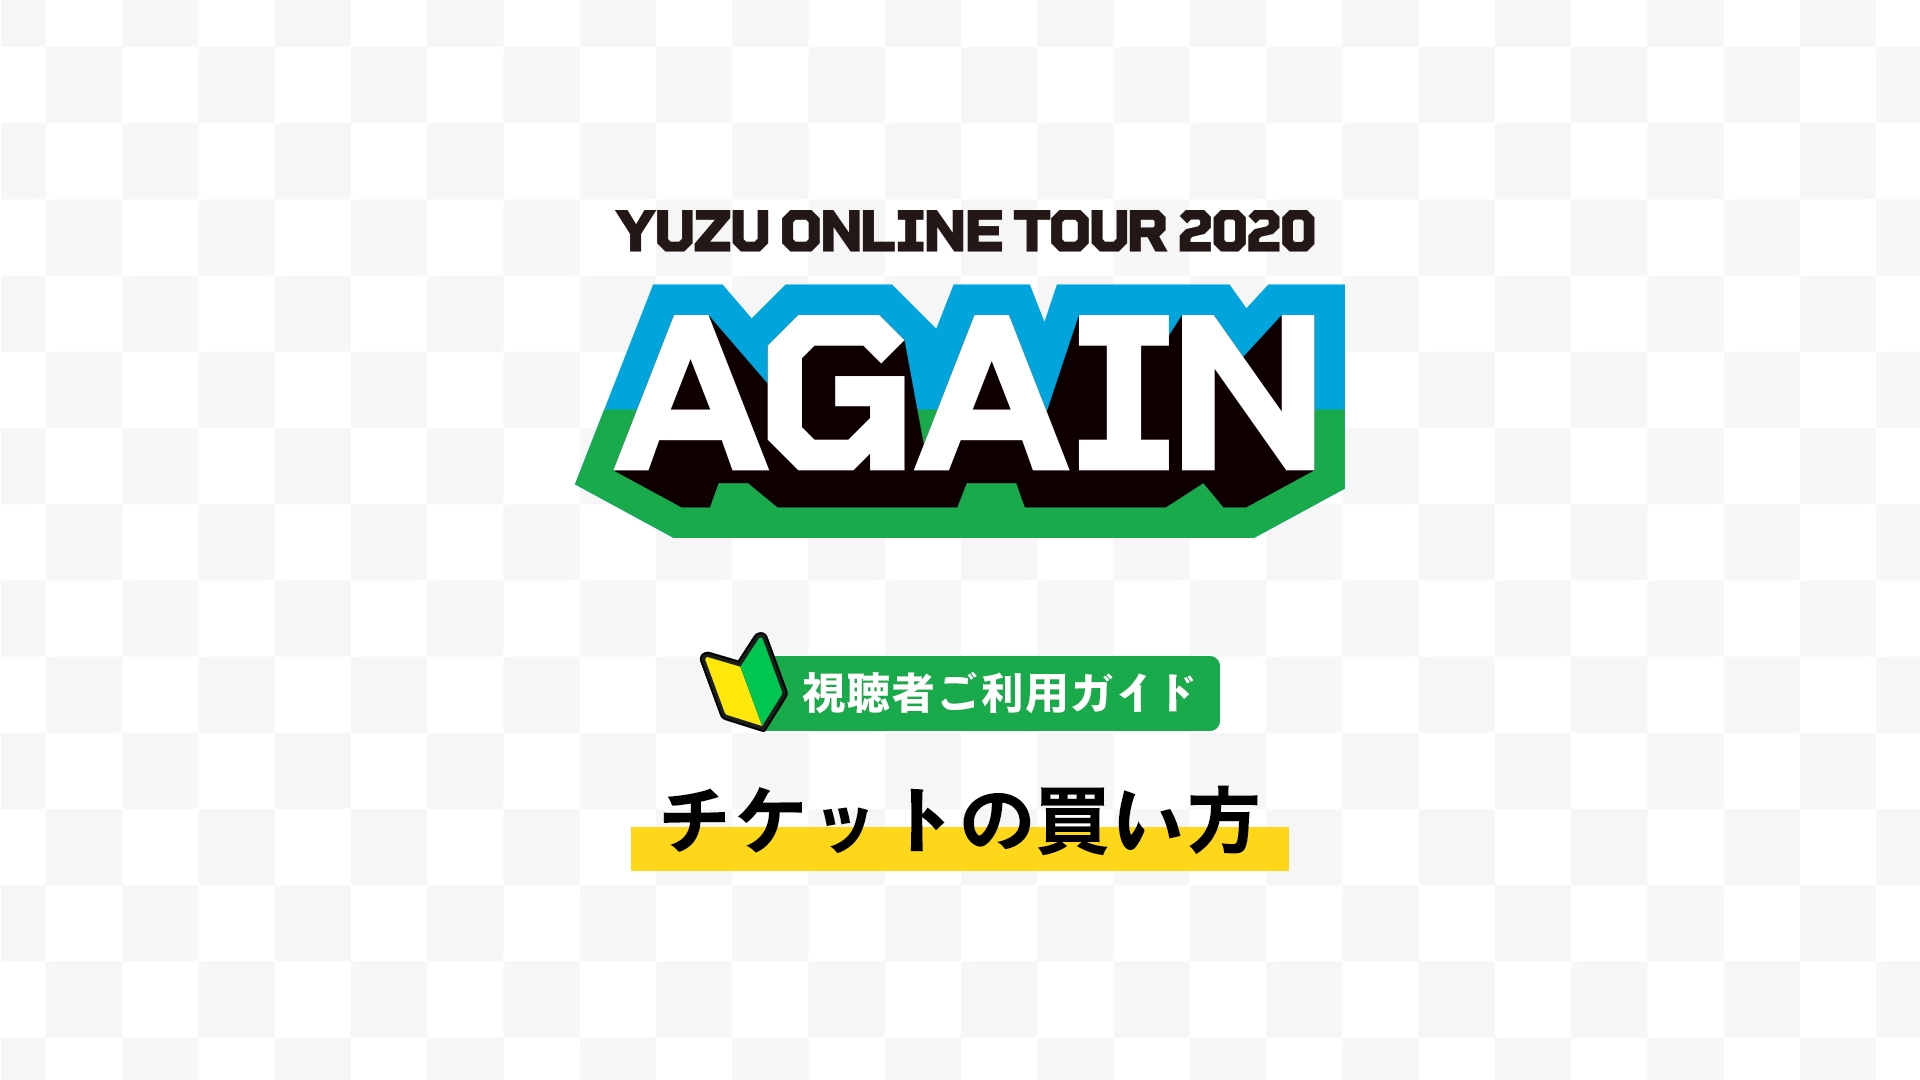 ゆずオンラインツアー Yuzu Online Tour Again 購入ガイド Openrec Next